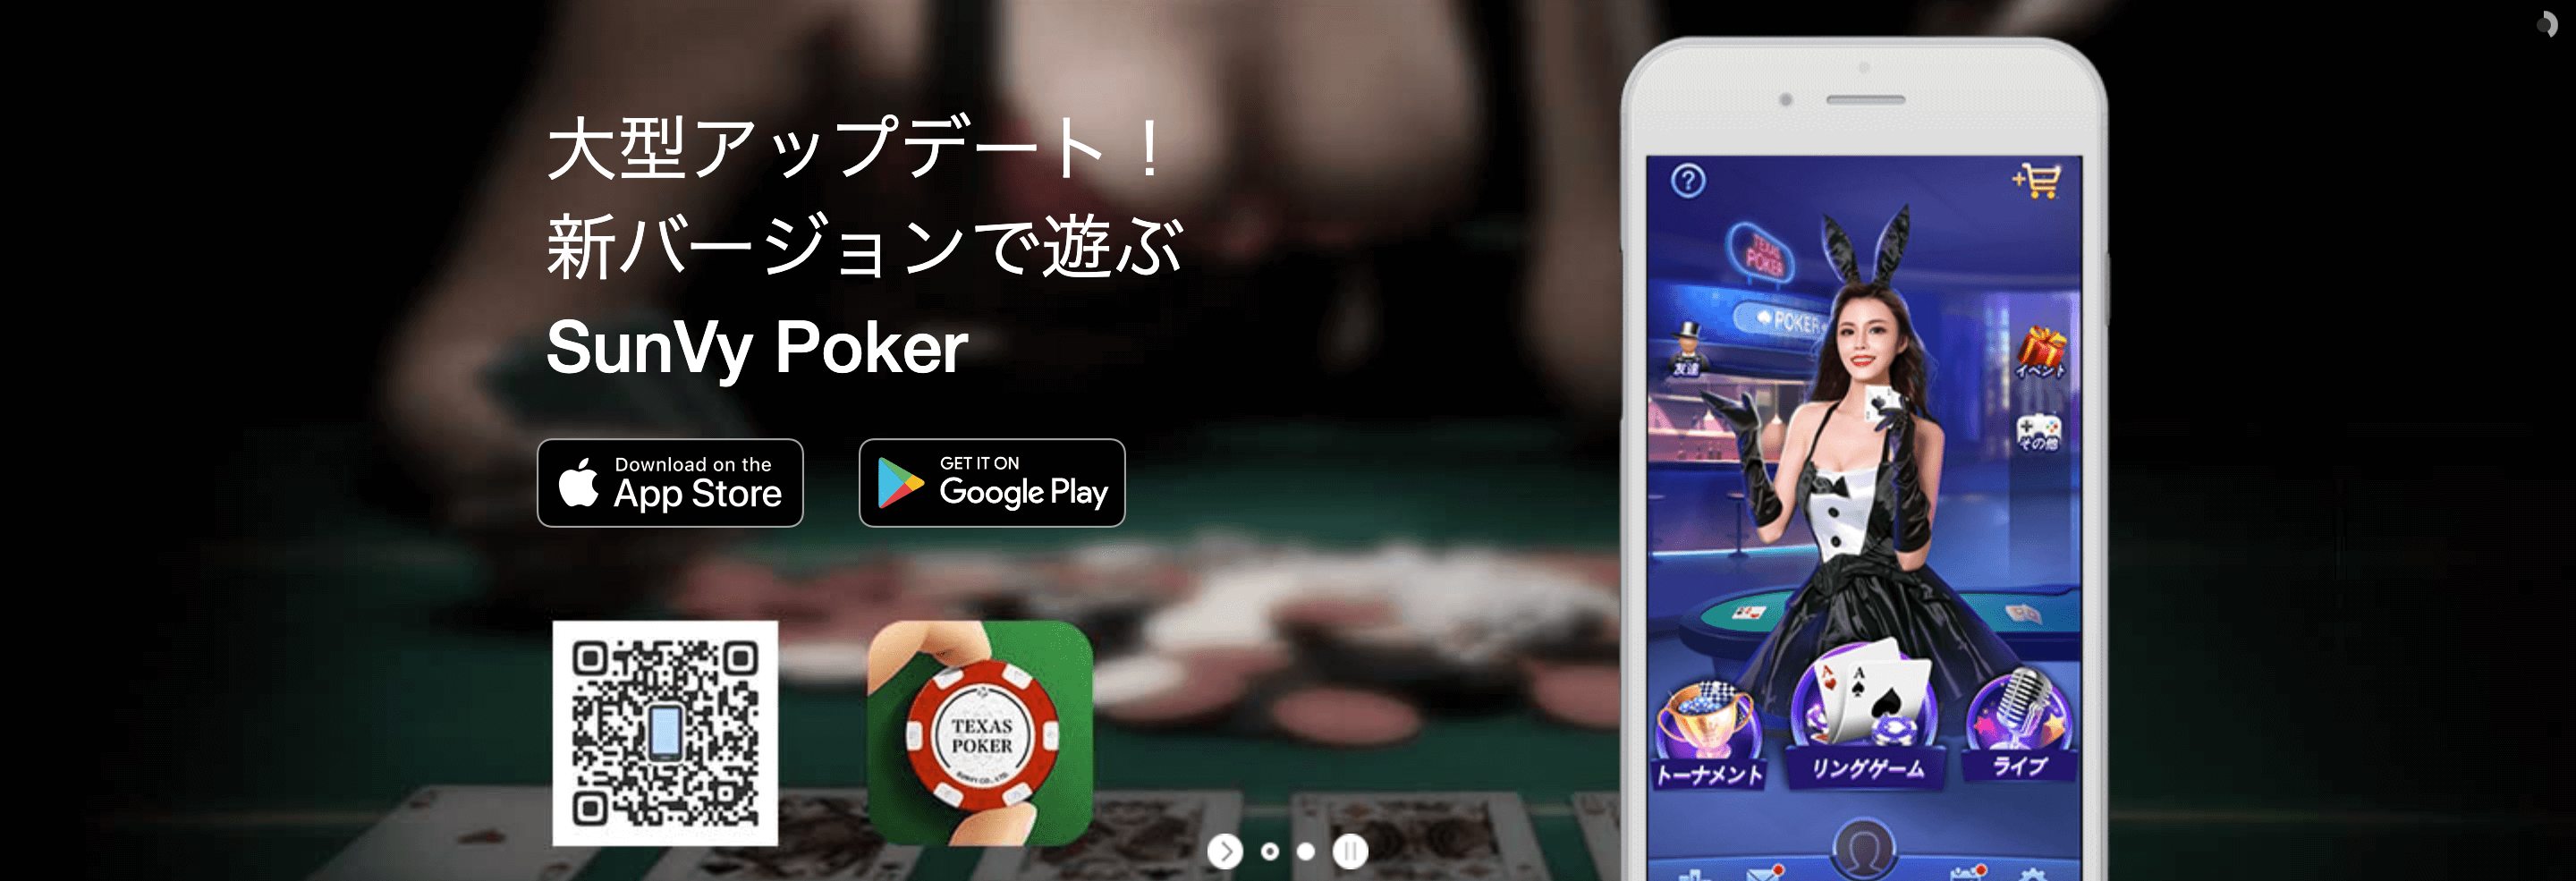 友達 対戦 ポーカーアプリ SunVy Poker